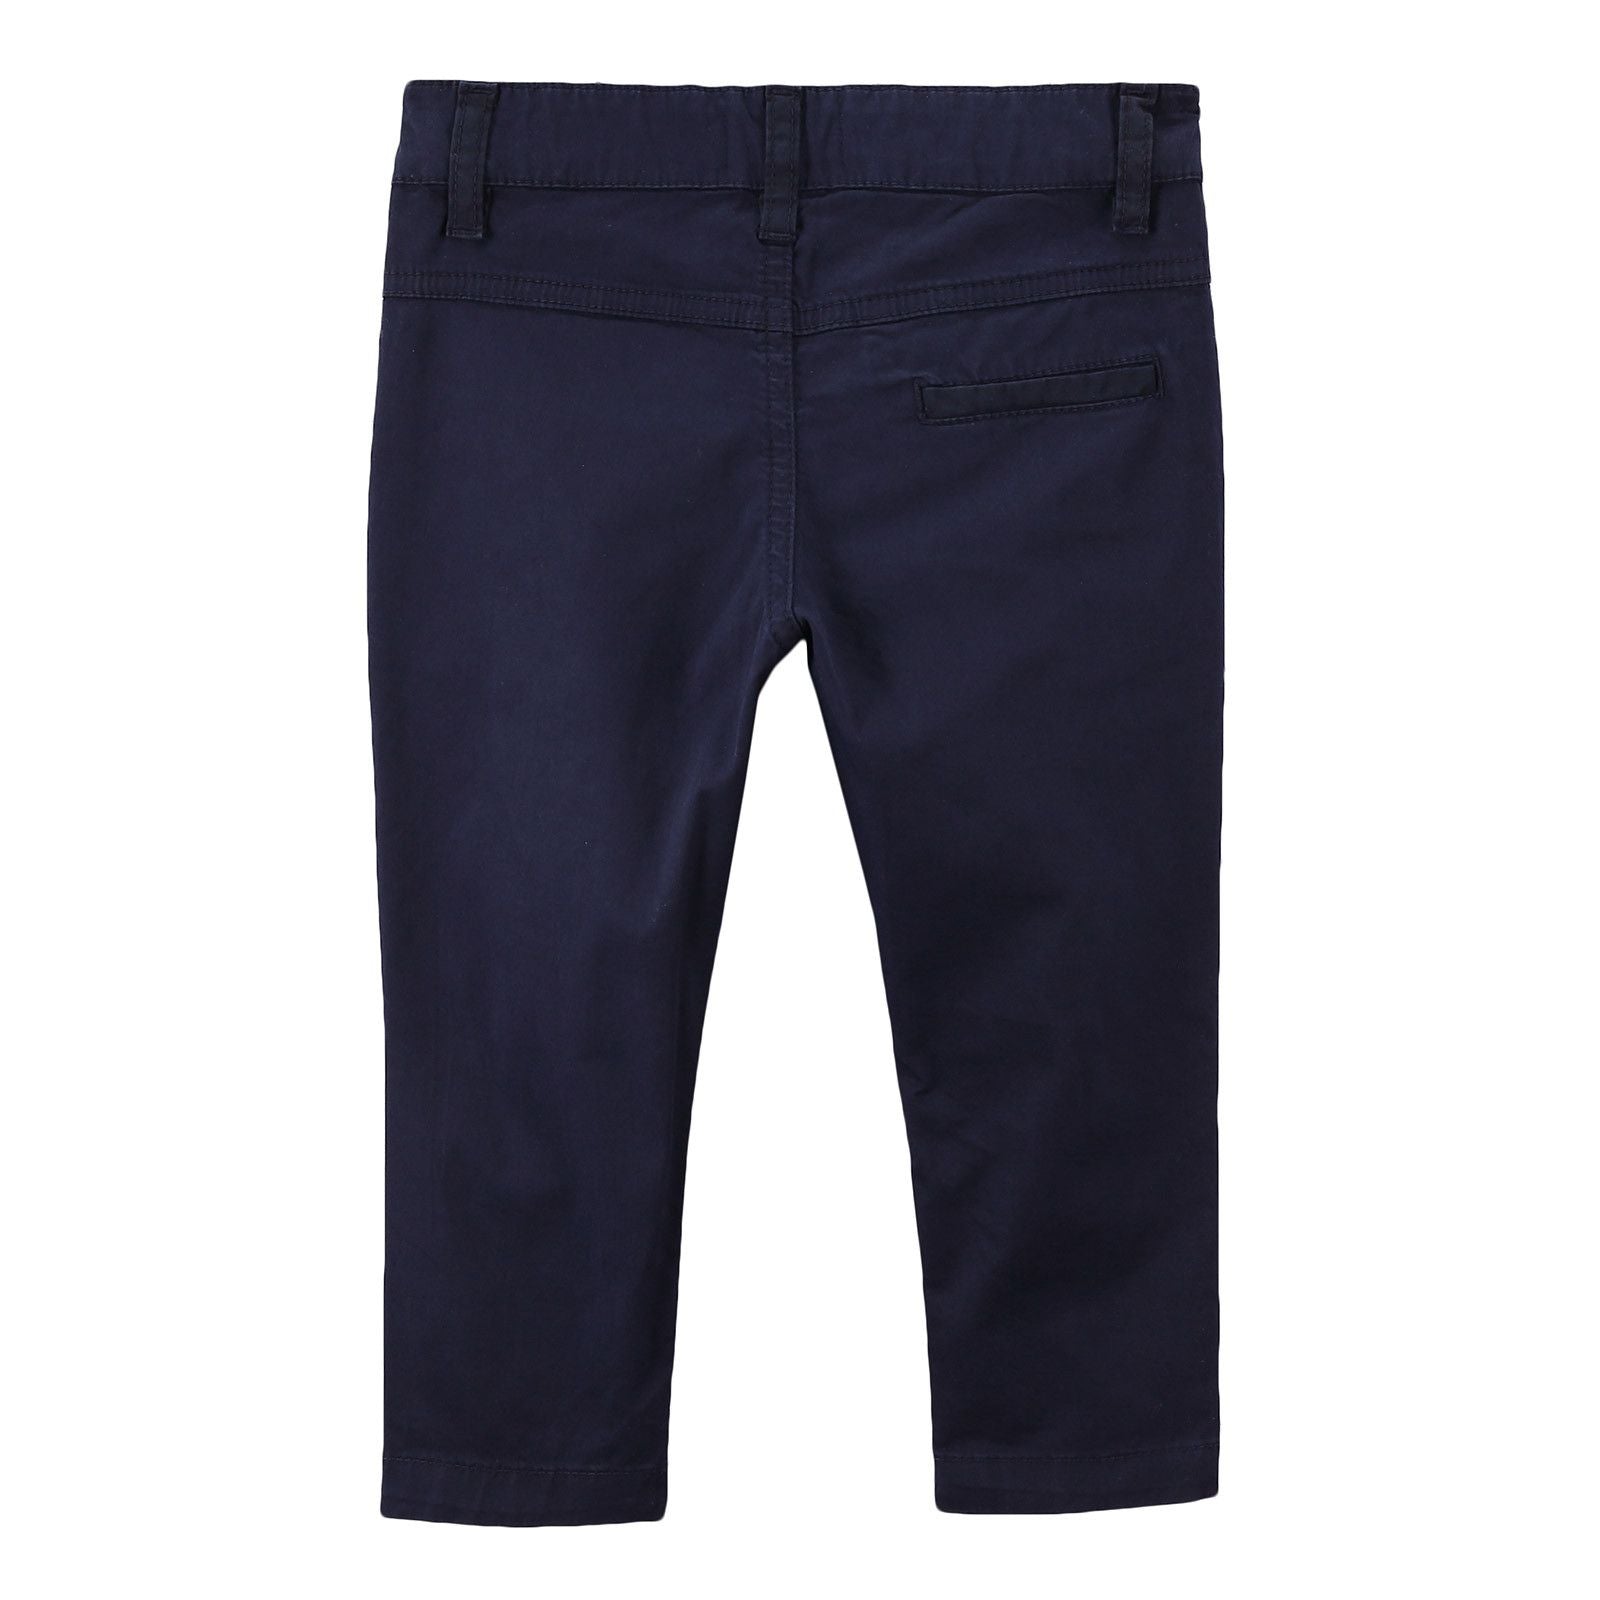 Boys Navy Blue Cotton Trousers - CÉMAROSE | Children's Fashion Store - 2